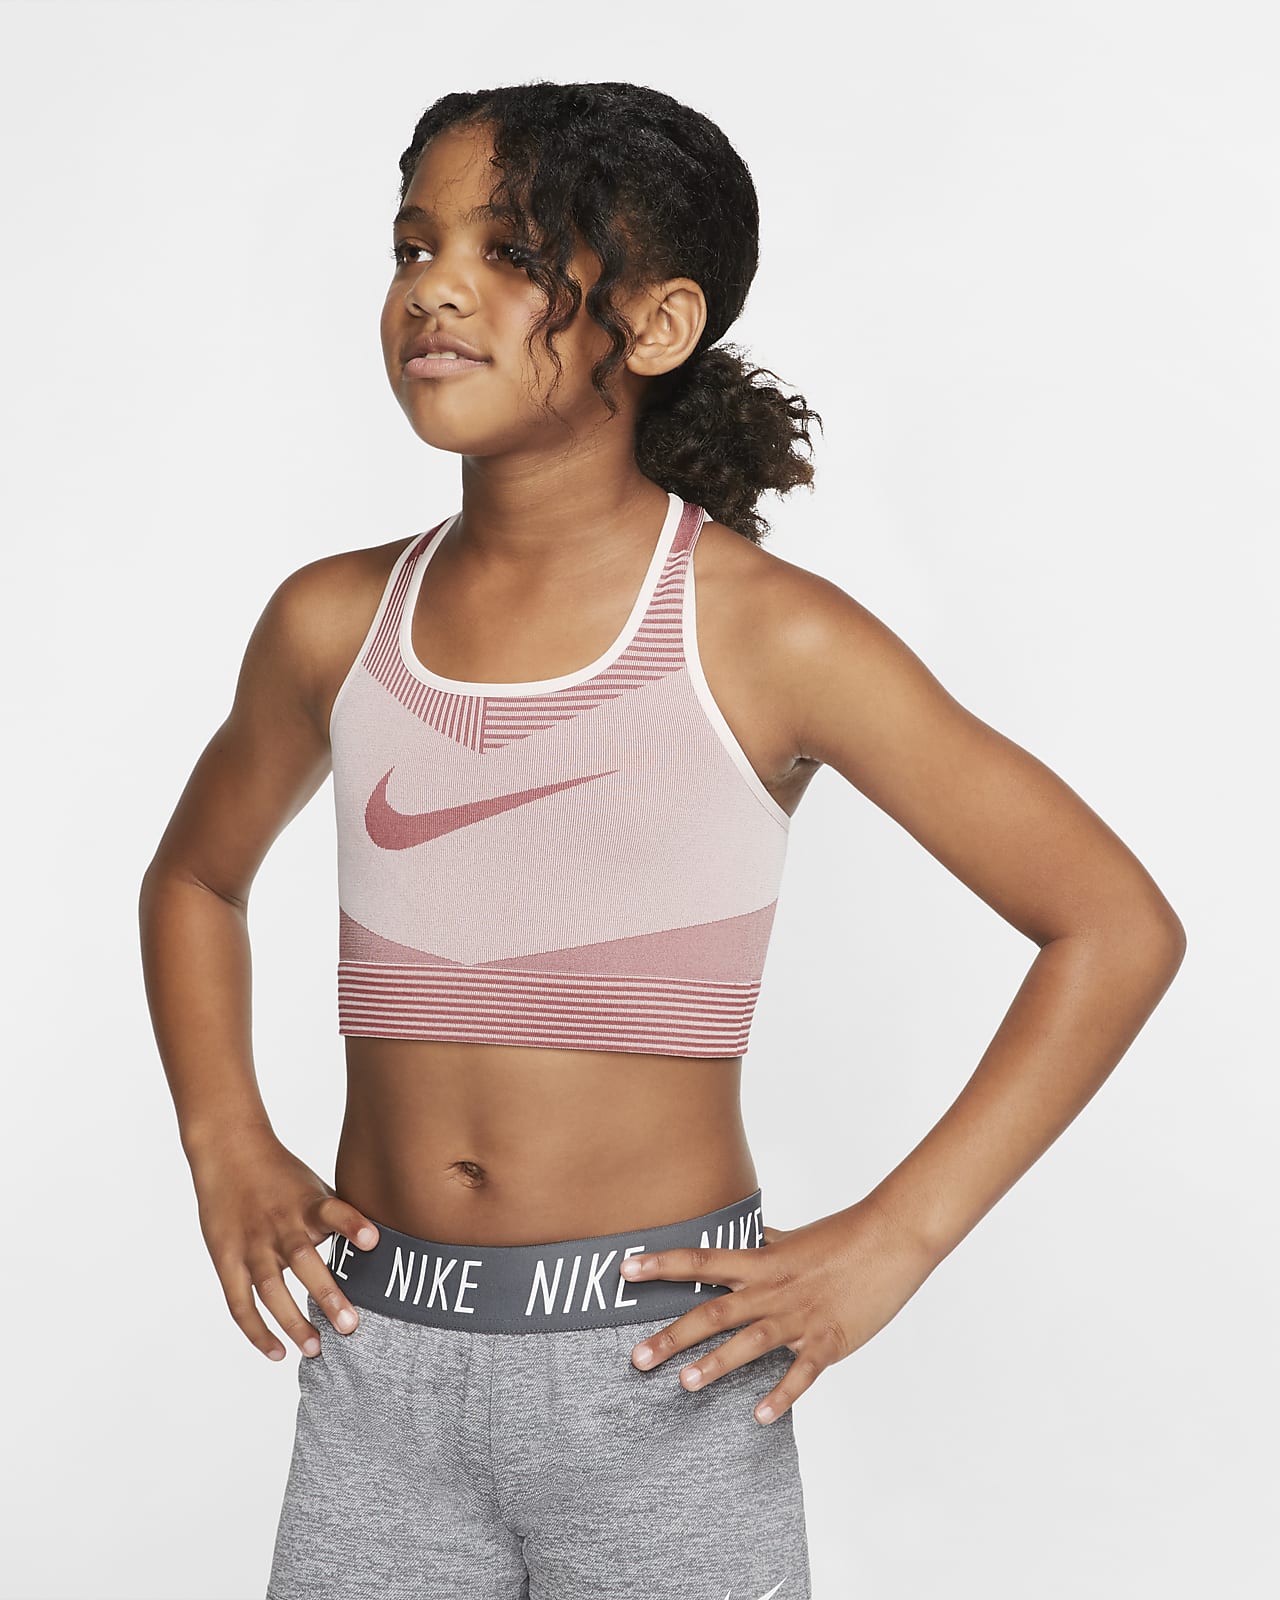 Топики для девочек 12. Спортивный топ бра Nike. Спортивный топ для девочки. Топик для девочки 12. Топик для девочки 10 лет.